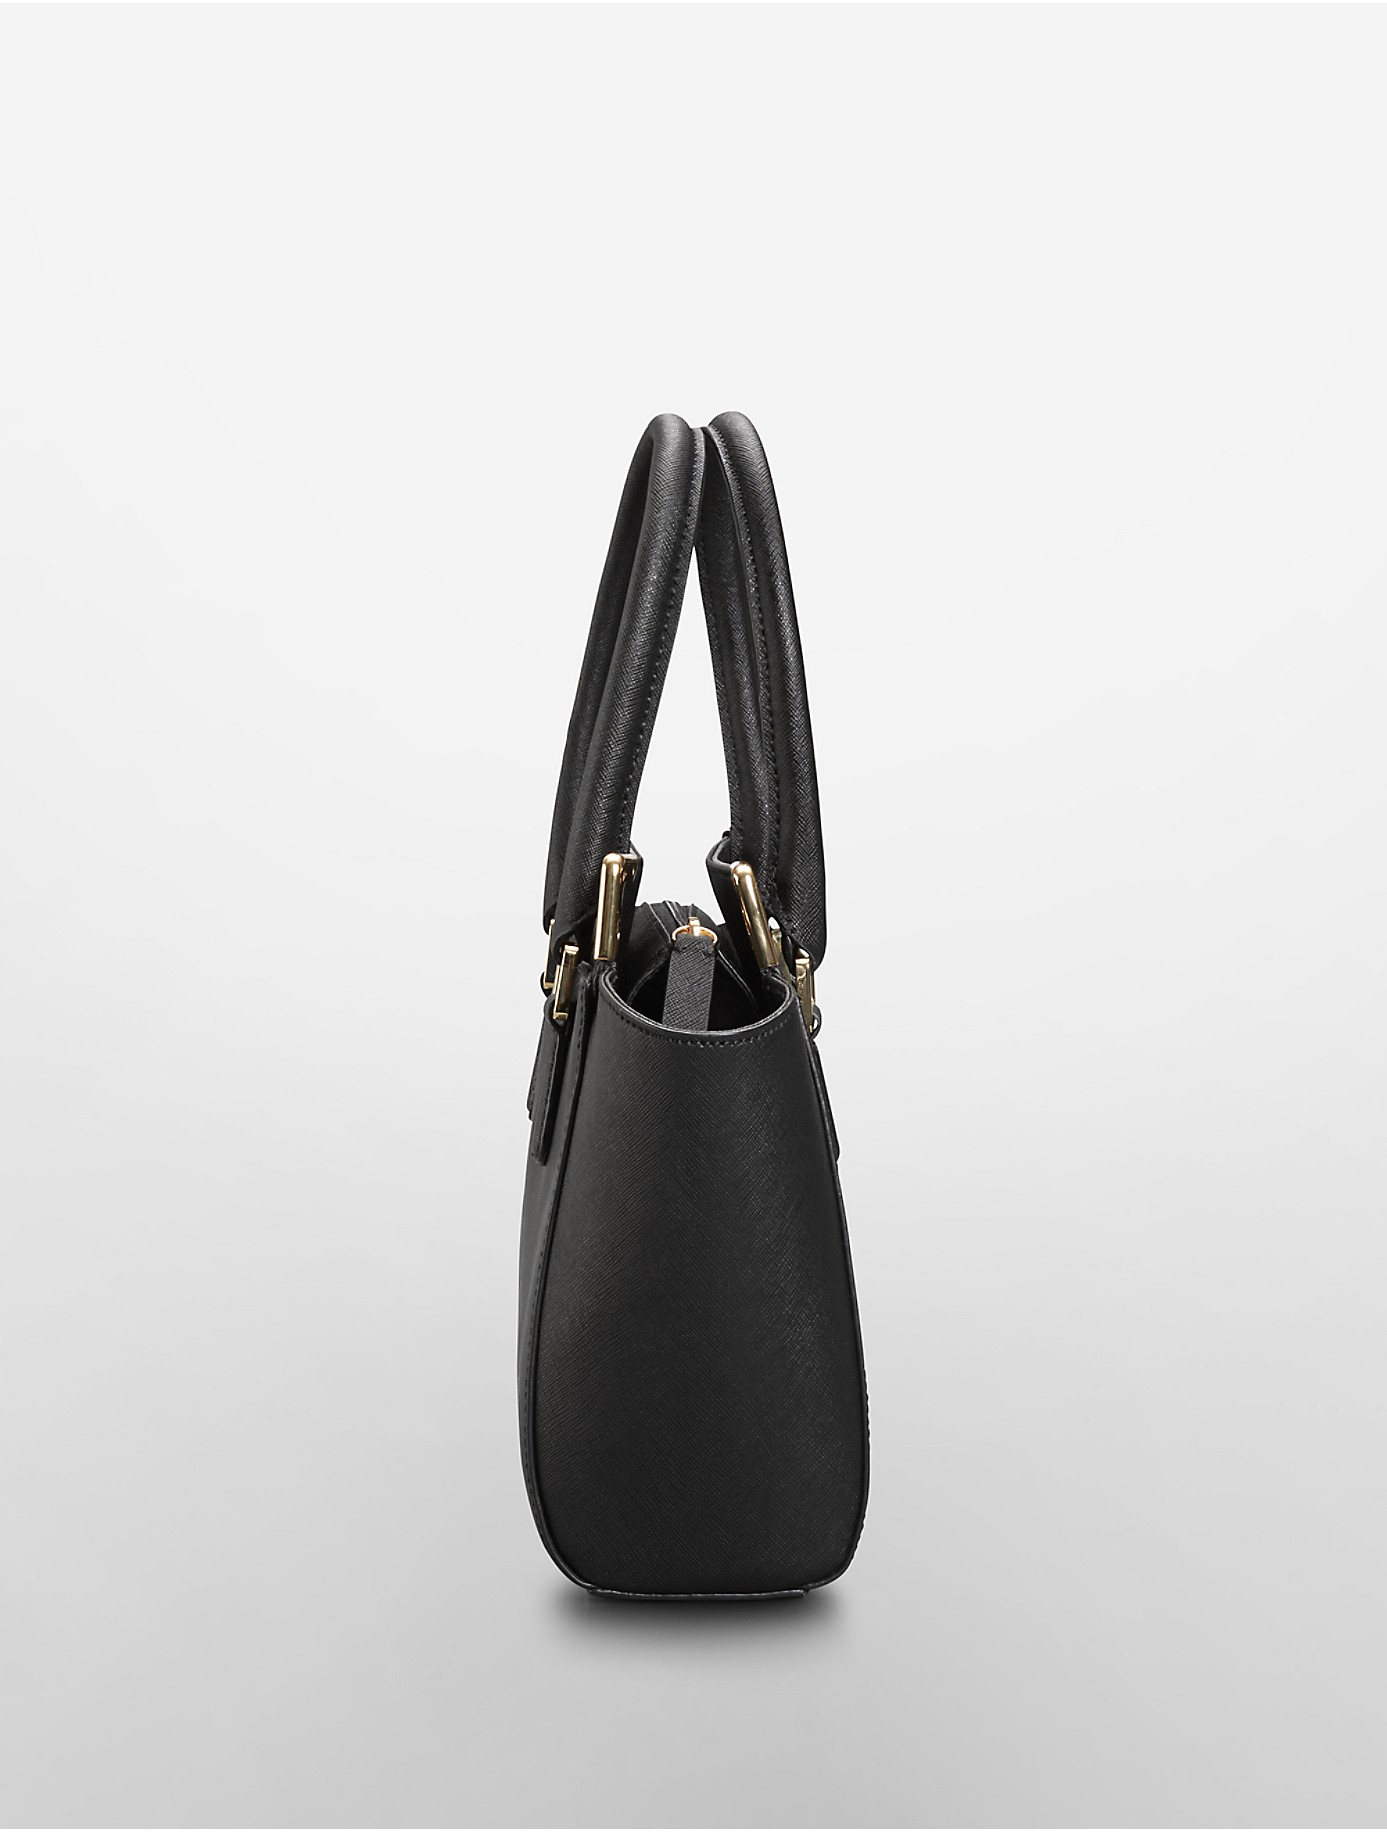 Ampère vacature Arabische Sarabo Calvin Klein Saffiano Leather Small Winged Tote Bag in Black | Lyst